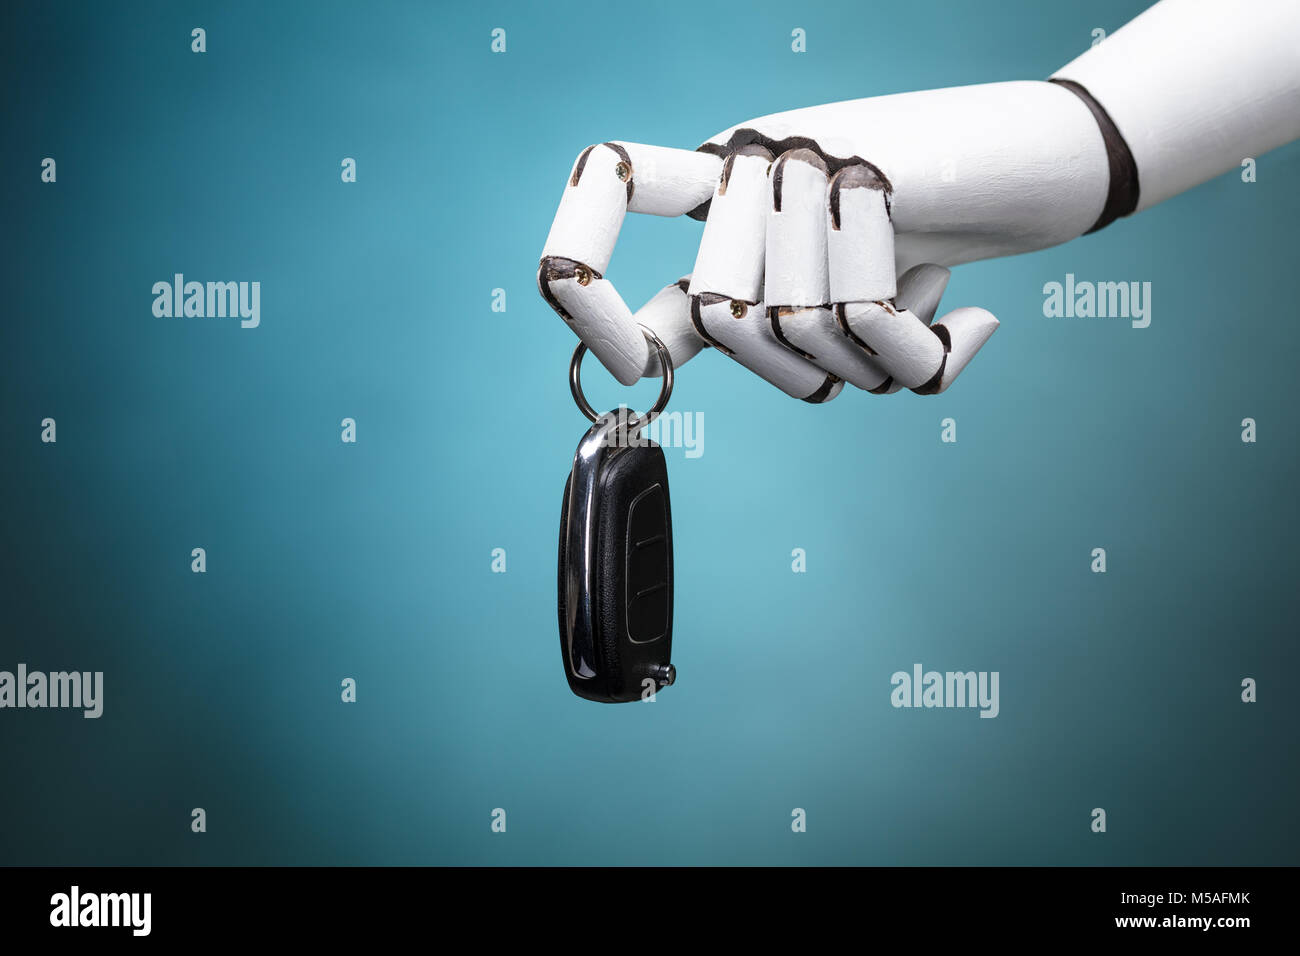 Nahaufnahme eines Roboters Holding Autoschlüssel auf Türkisfarbenem Hintergrund Stockfoto